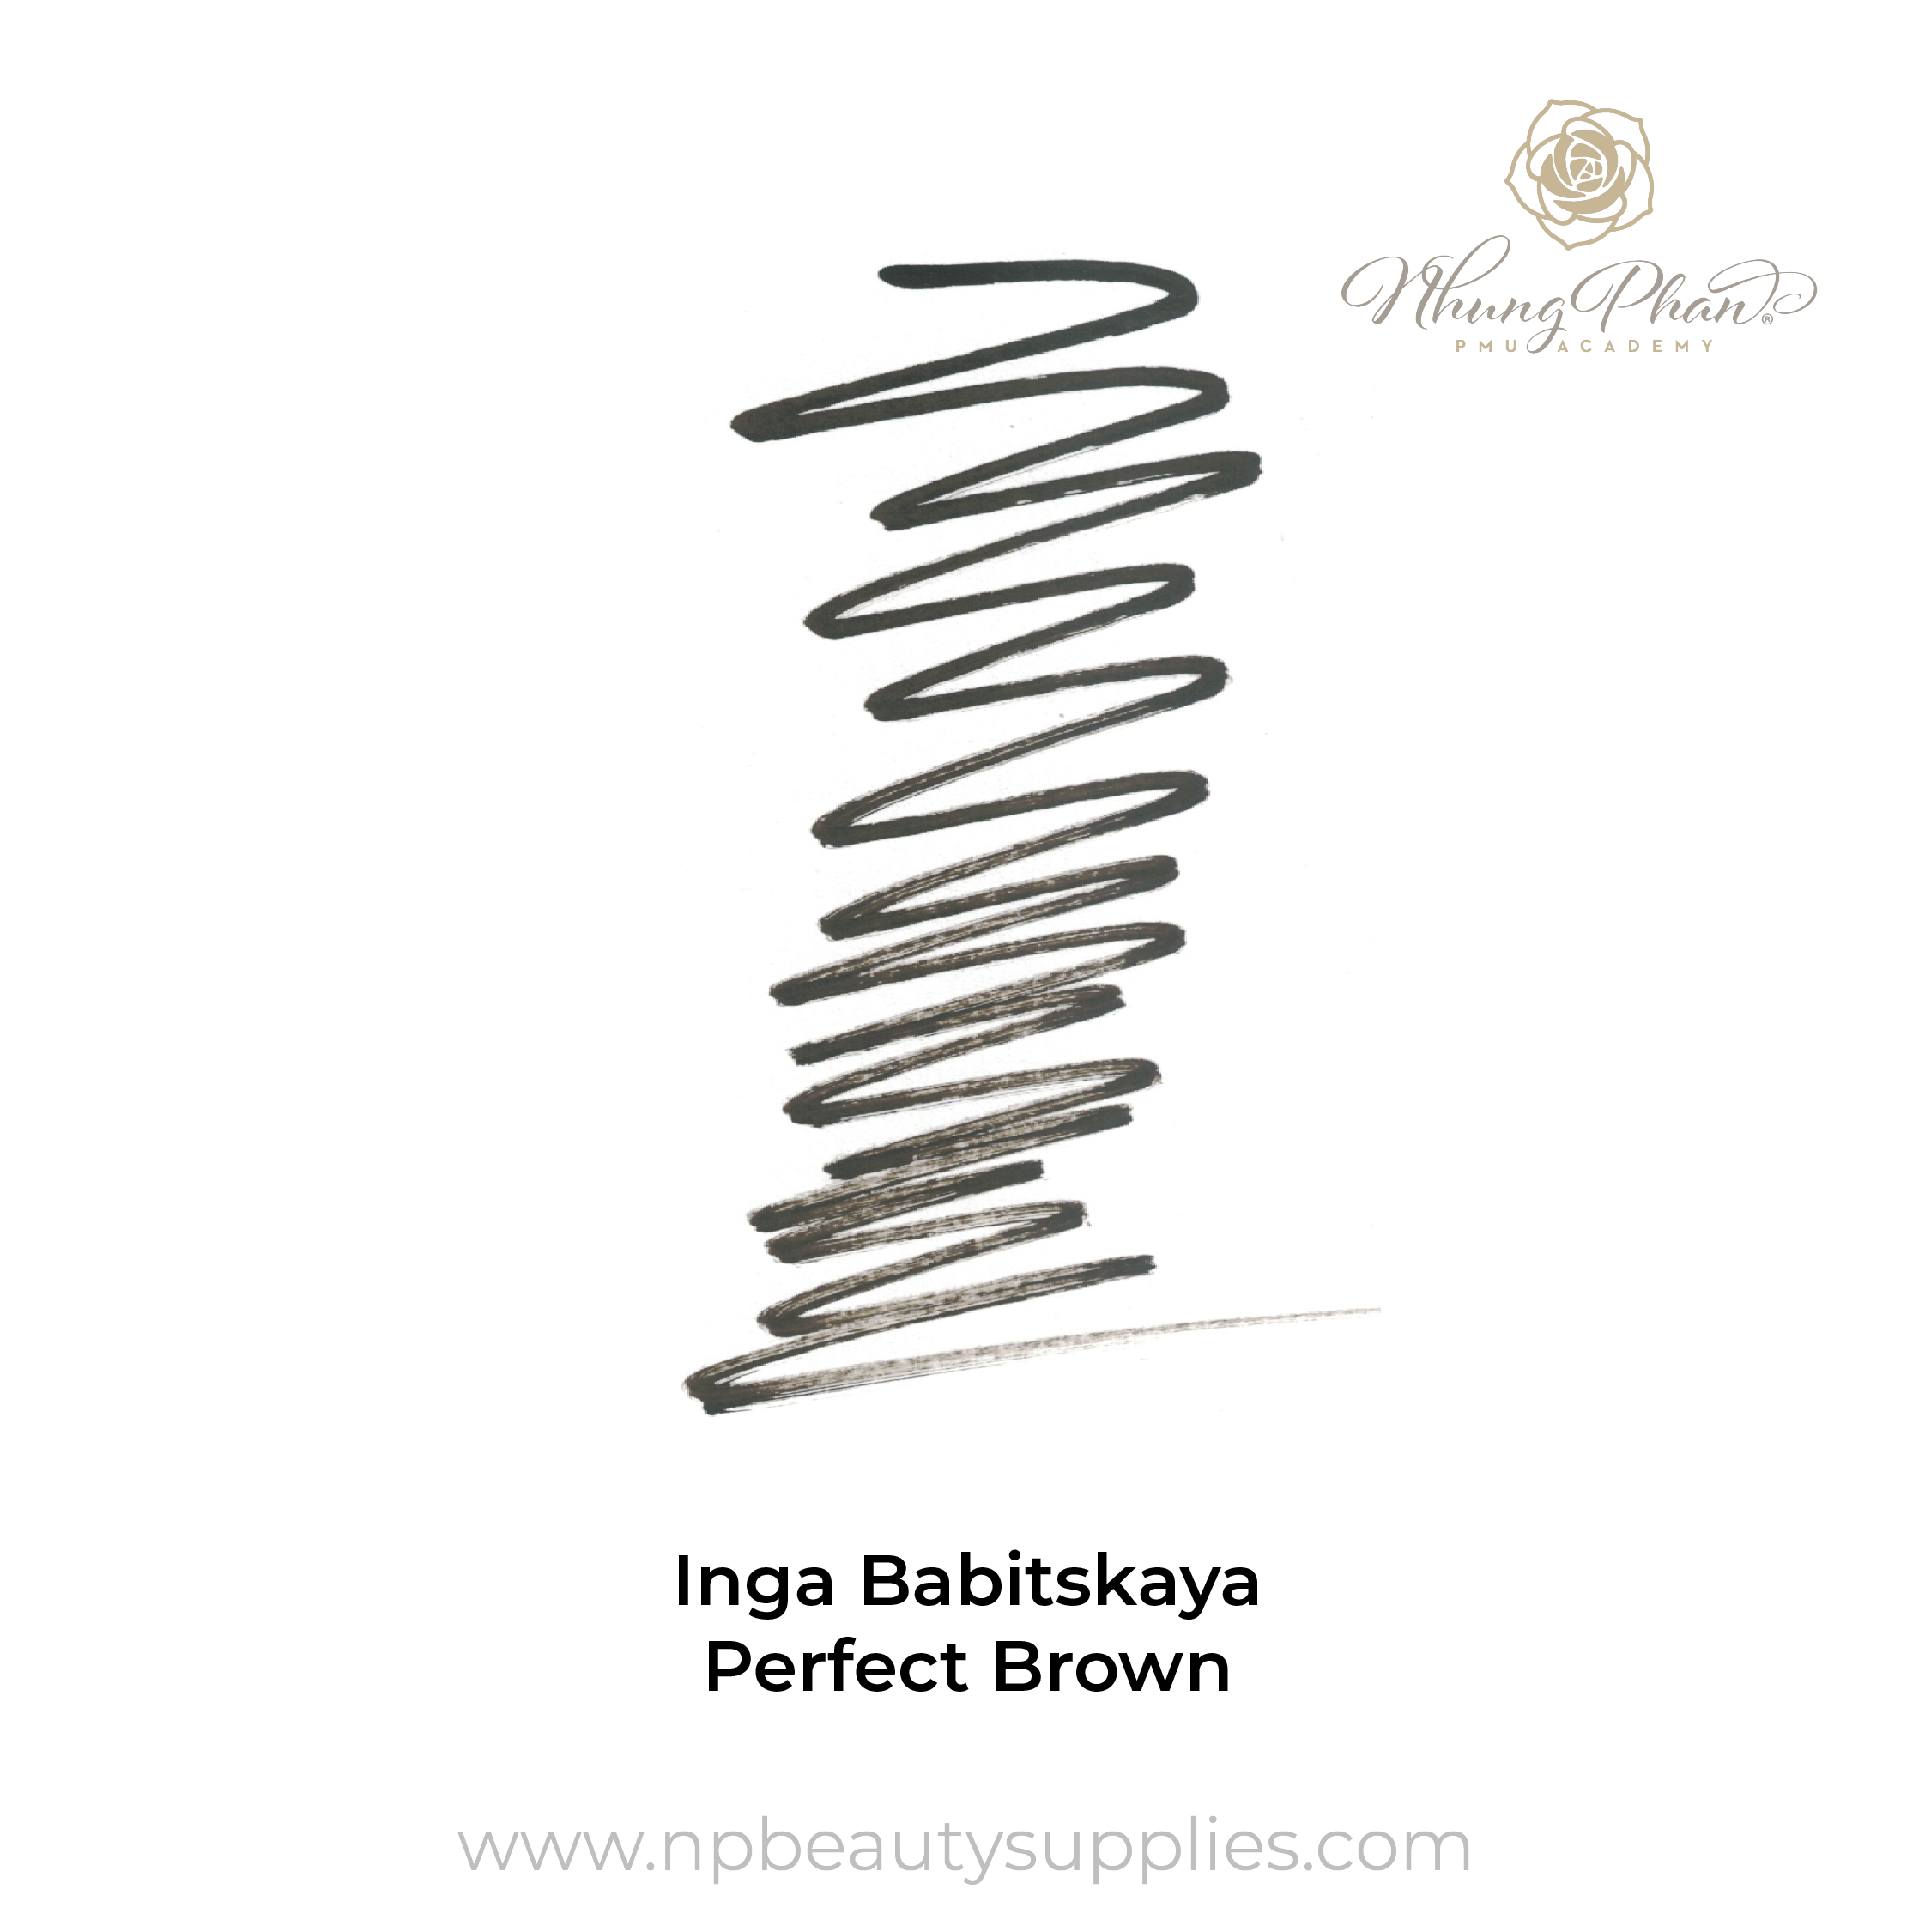 Inga Babitskaya - Perfect Brown